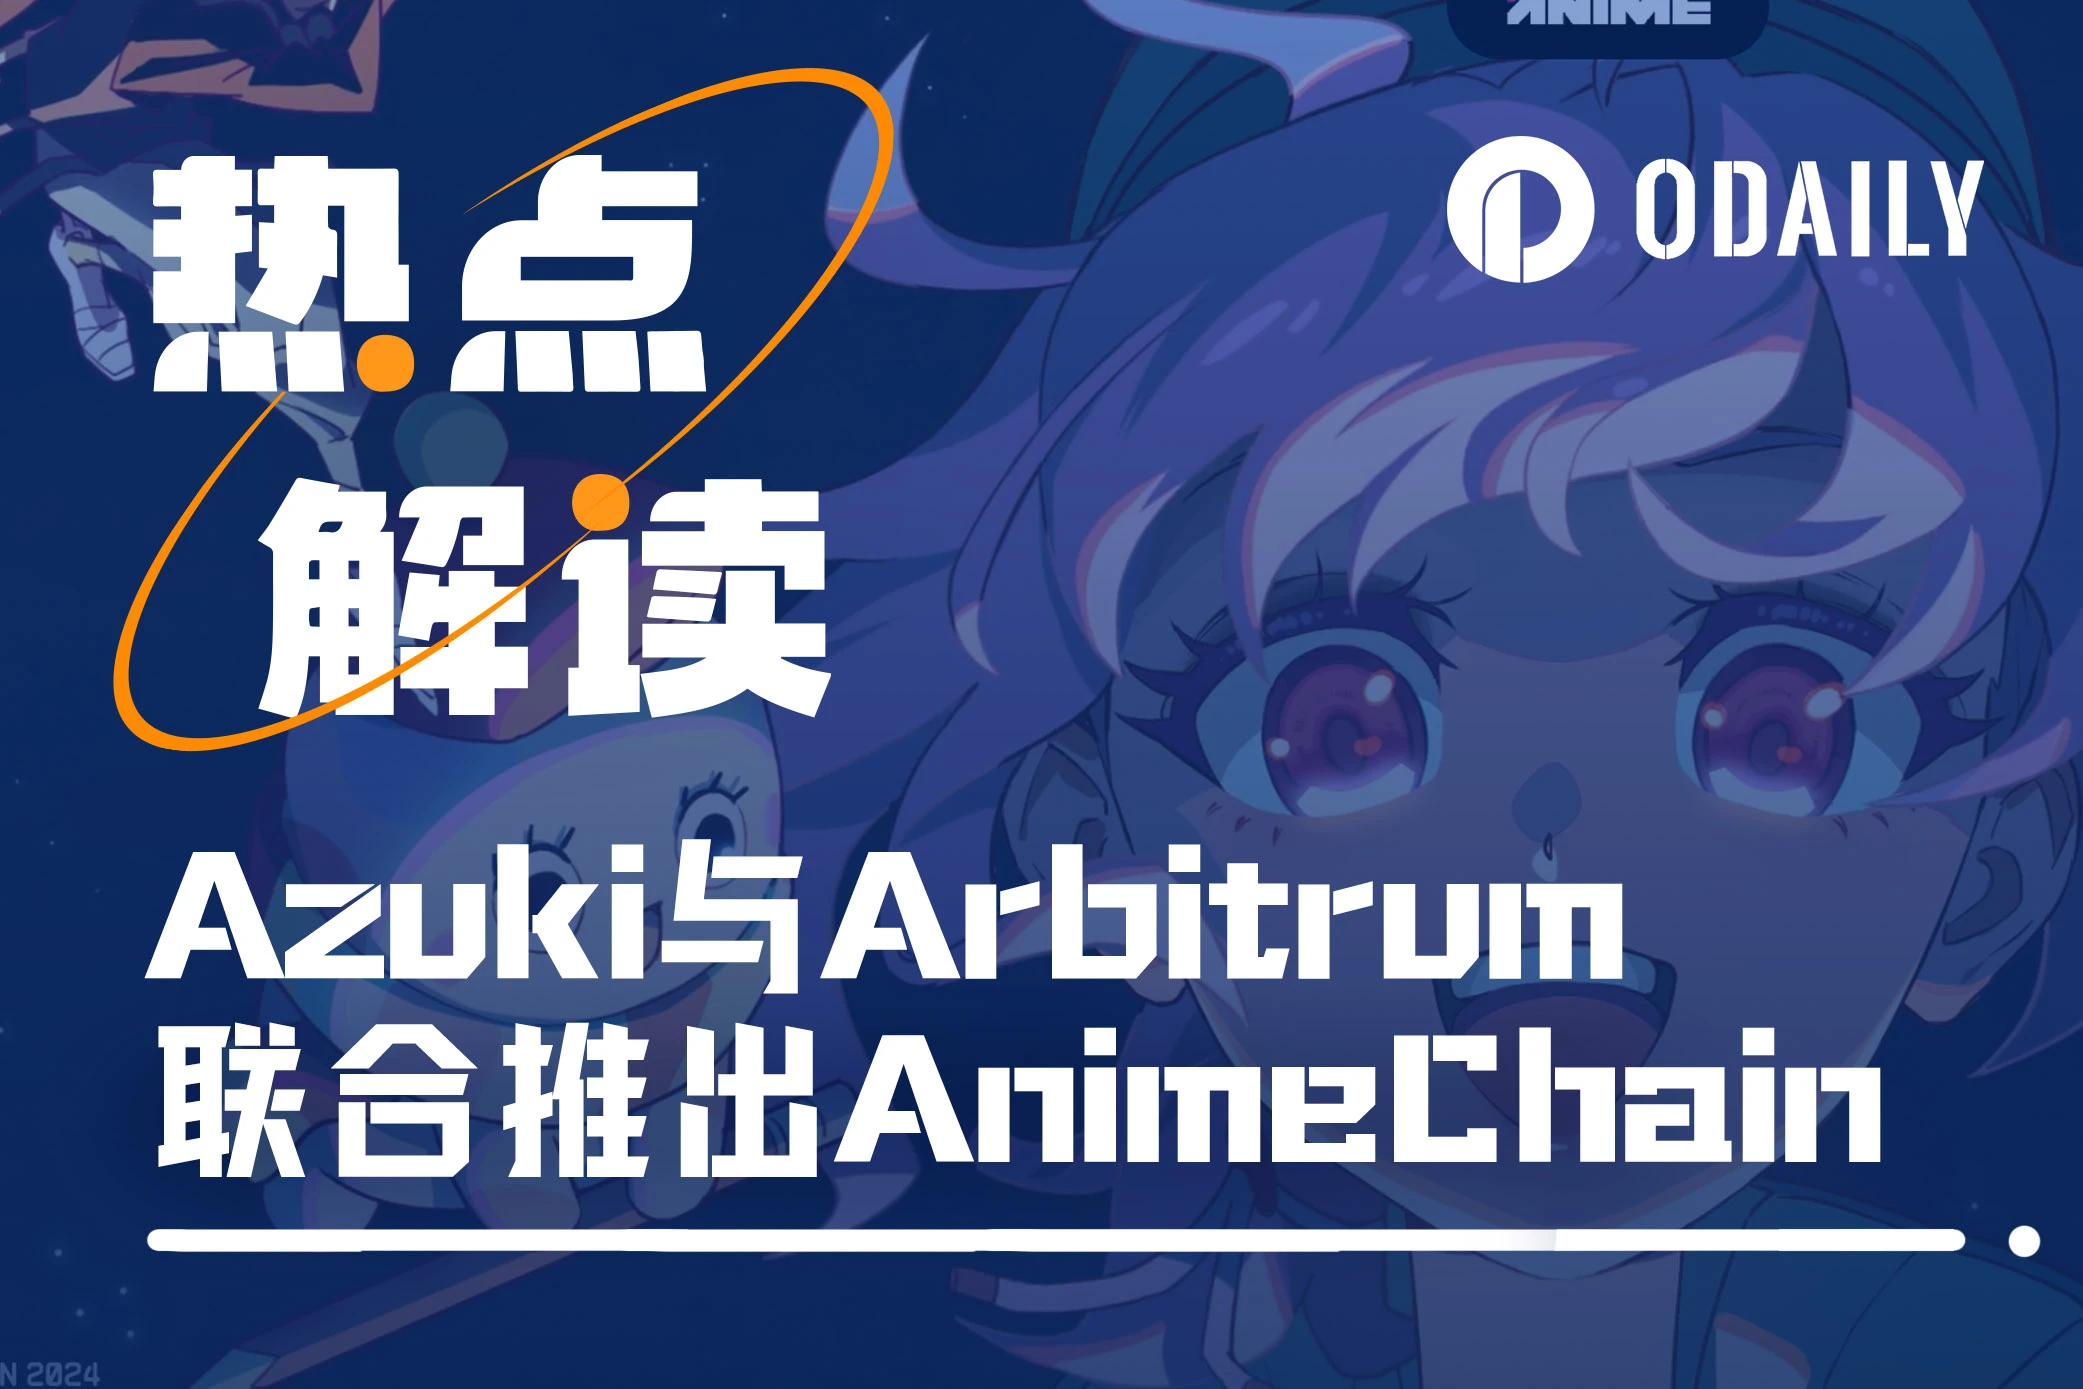 与Arbitrum基金会合推动漫链AnimeChain，Azuki发币在即？